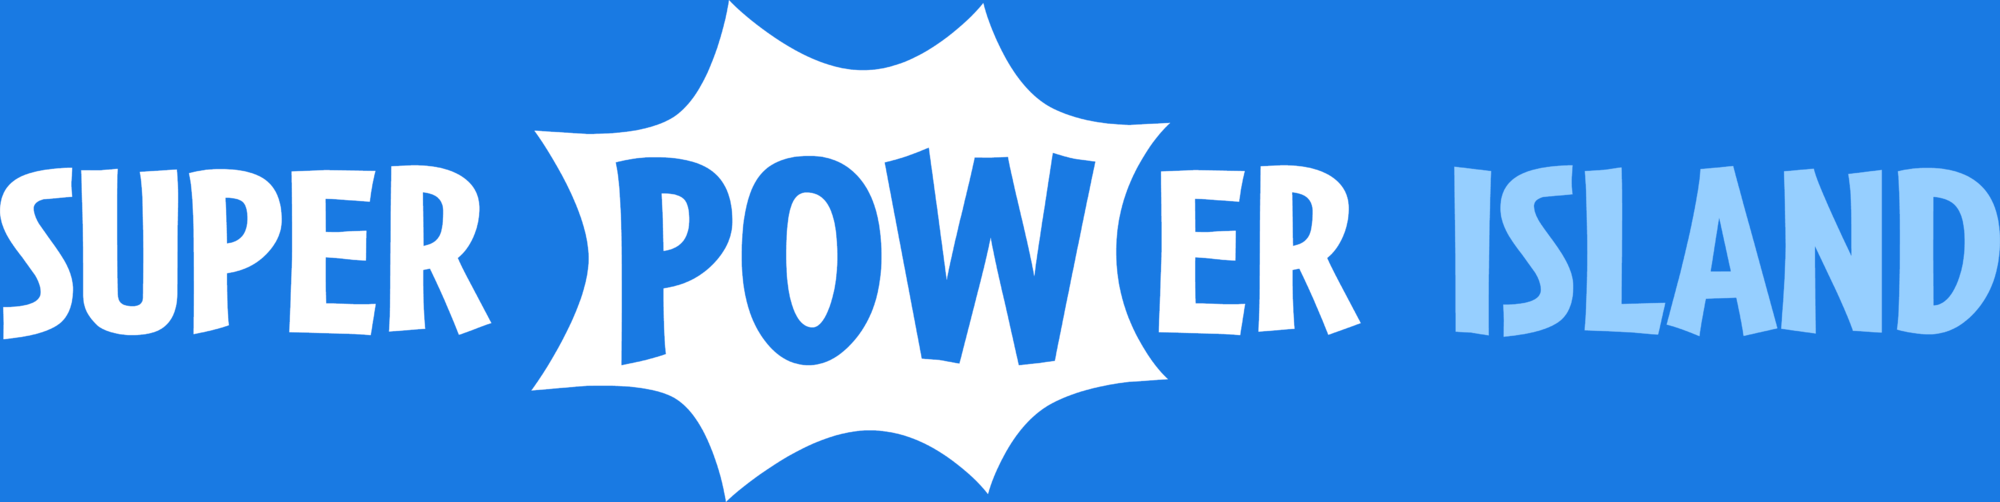 Poptropica Logo - Super Power Island